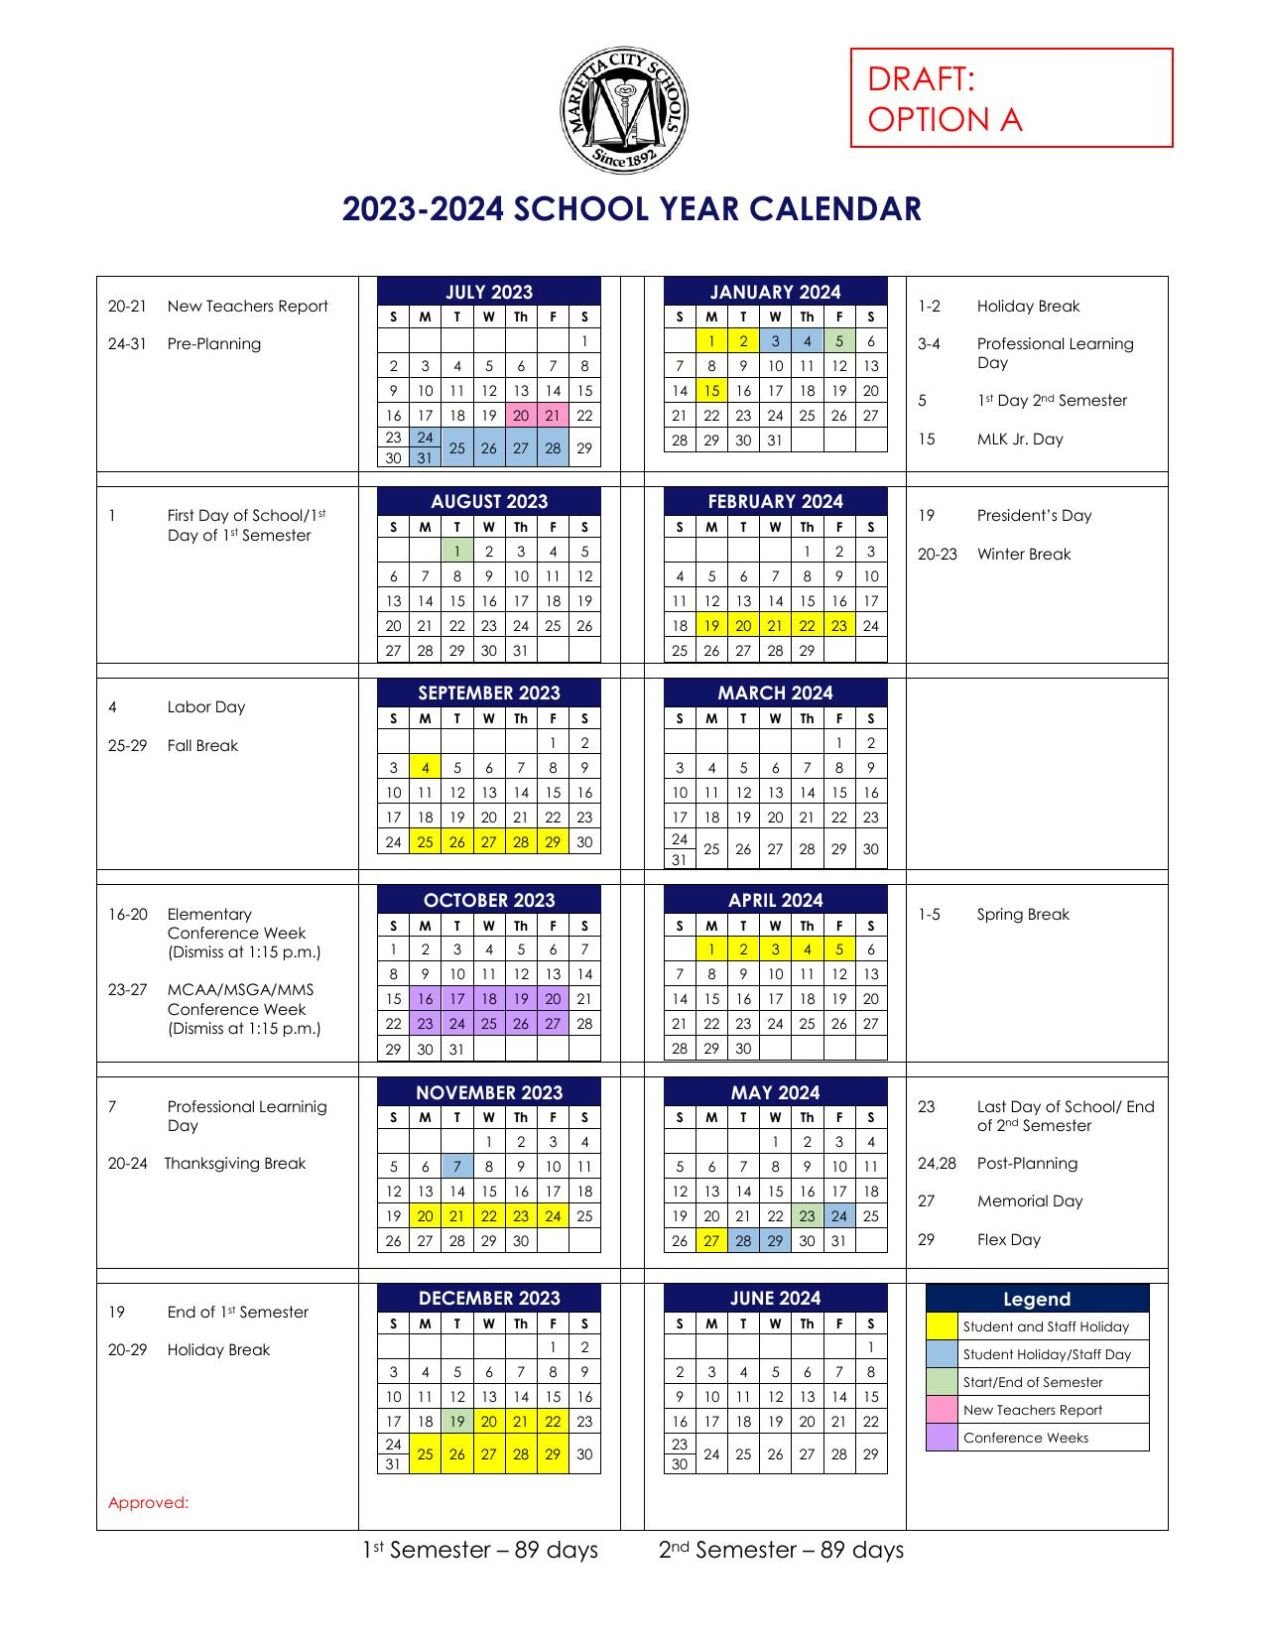 European School Calendar 2023 2024 Get Calendar 2023 Update